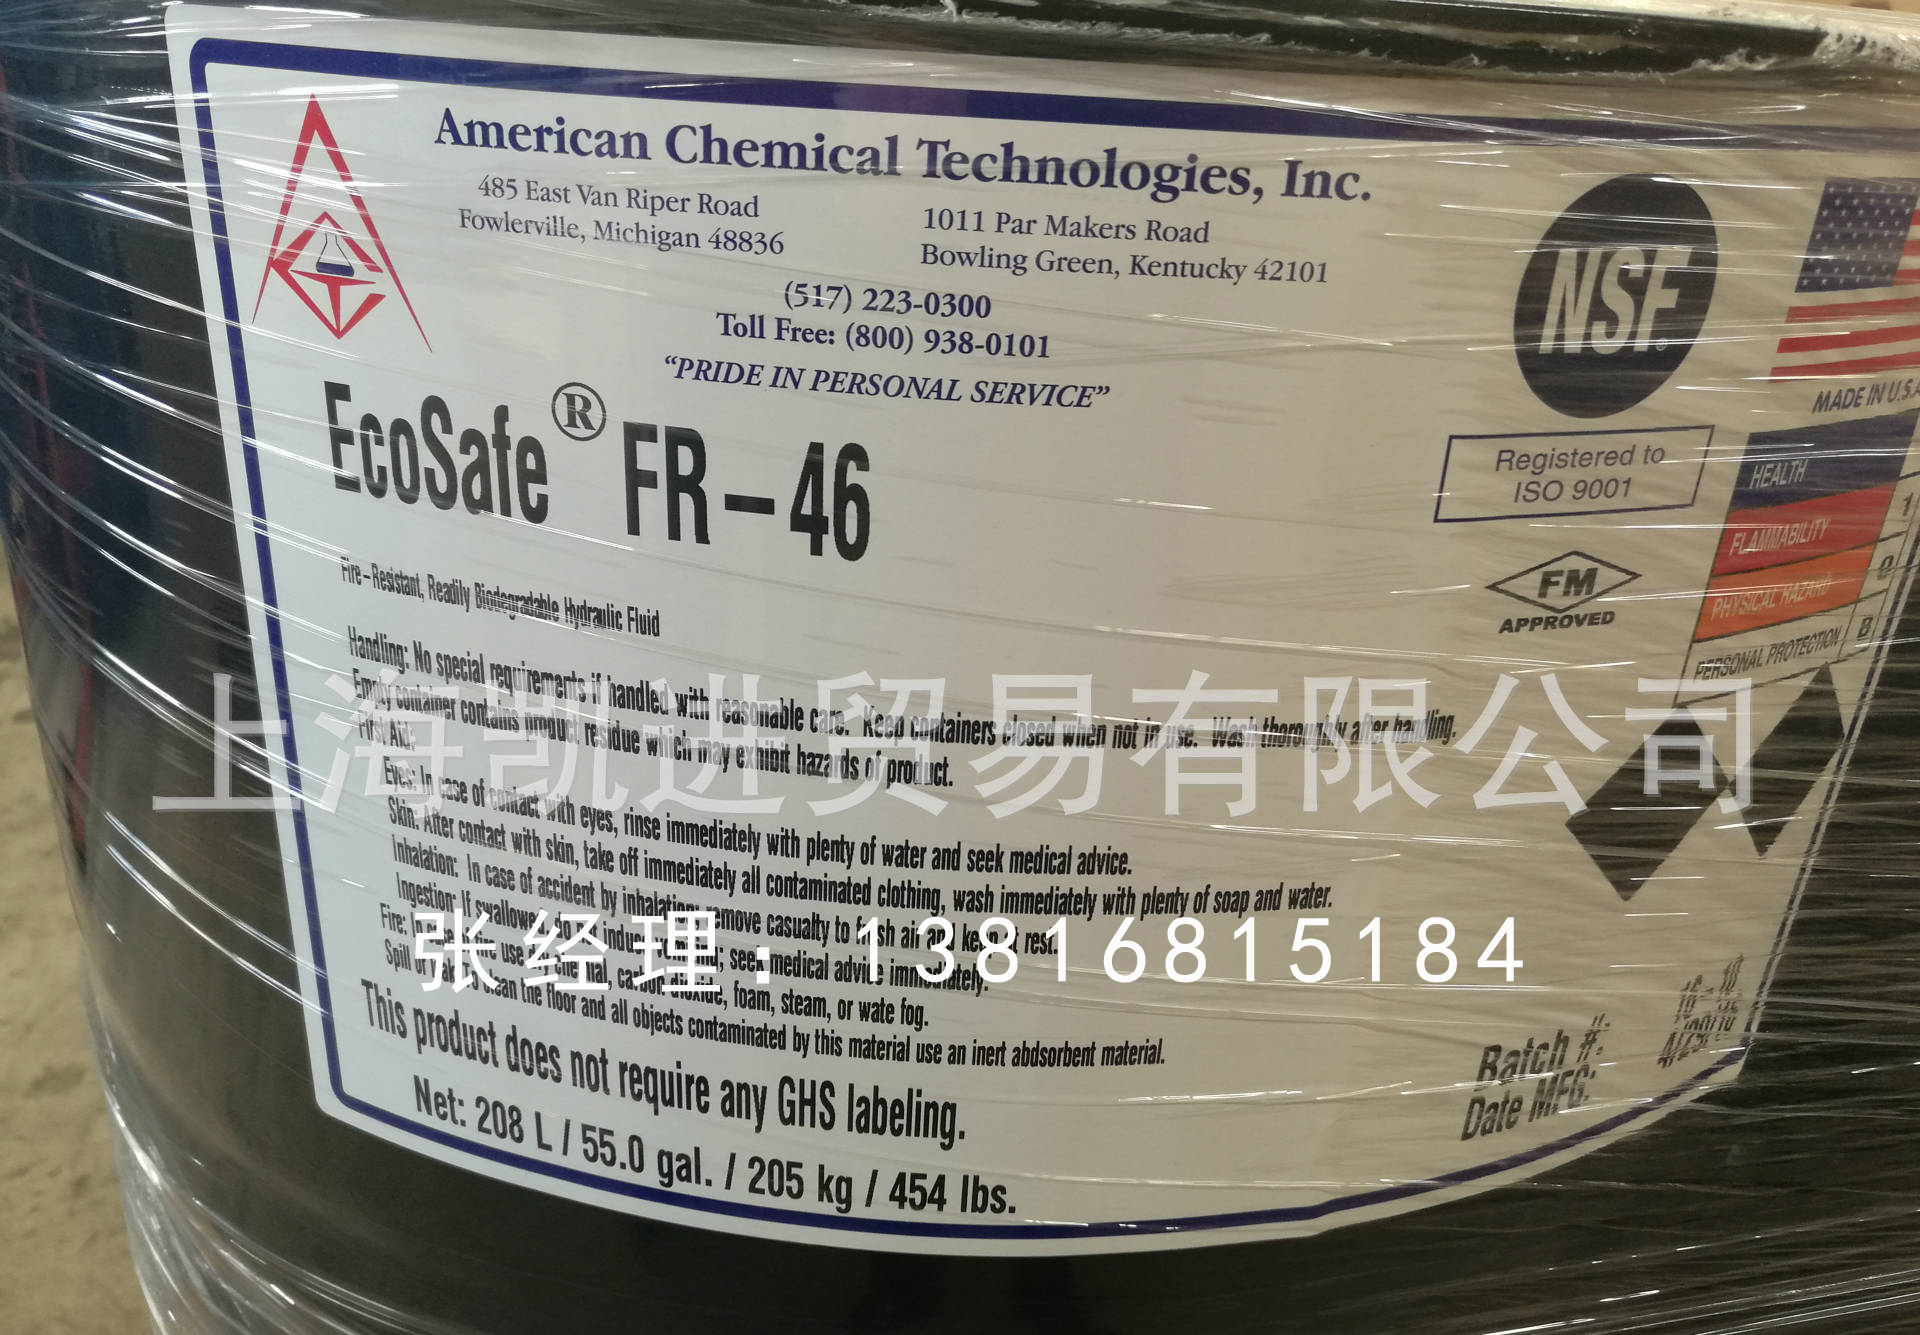 EcoSafe FR-46美國化學技術公司軌道打磨車等專用防火液壓油